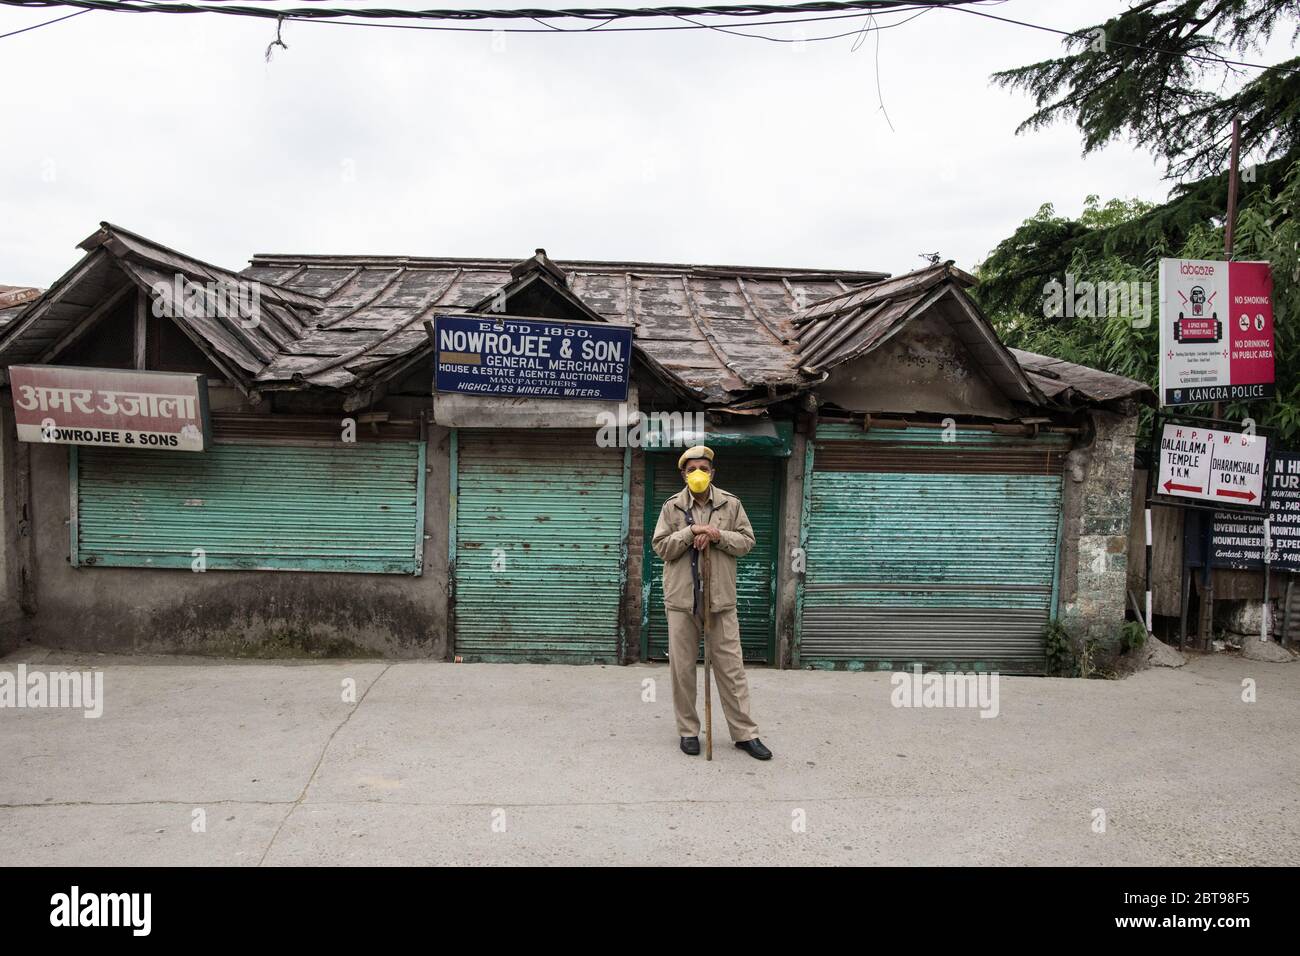 Agent de police portant un masque de protection et faisant respecter la distanciation sociale pour prévenir la propagation du coronavirus COVID 19. Dharamshala, Inde. Banque D'Images